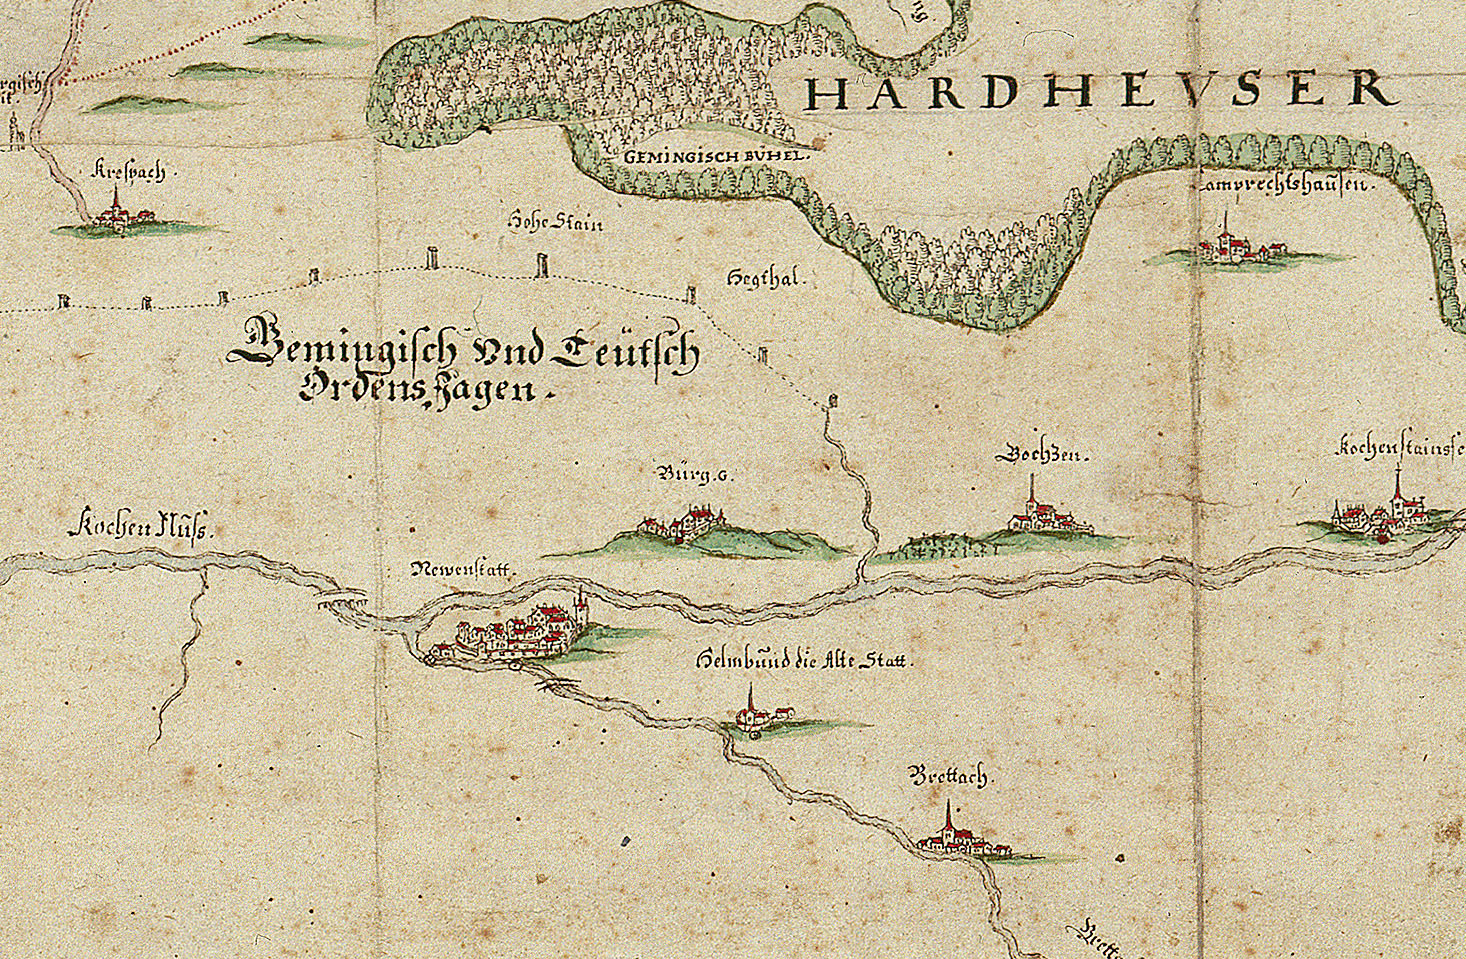 Neuenstadt und Umgebung auf einer Karte des Hardthäuser Walds, vermutlich 18. Jh. Quelle: Landesarchiv BW, HStAS N 3 Nr. 23/5